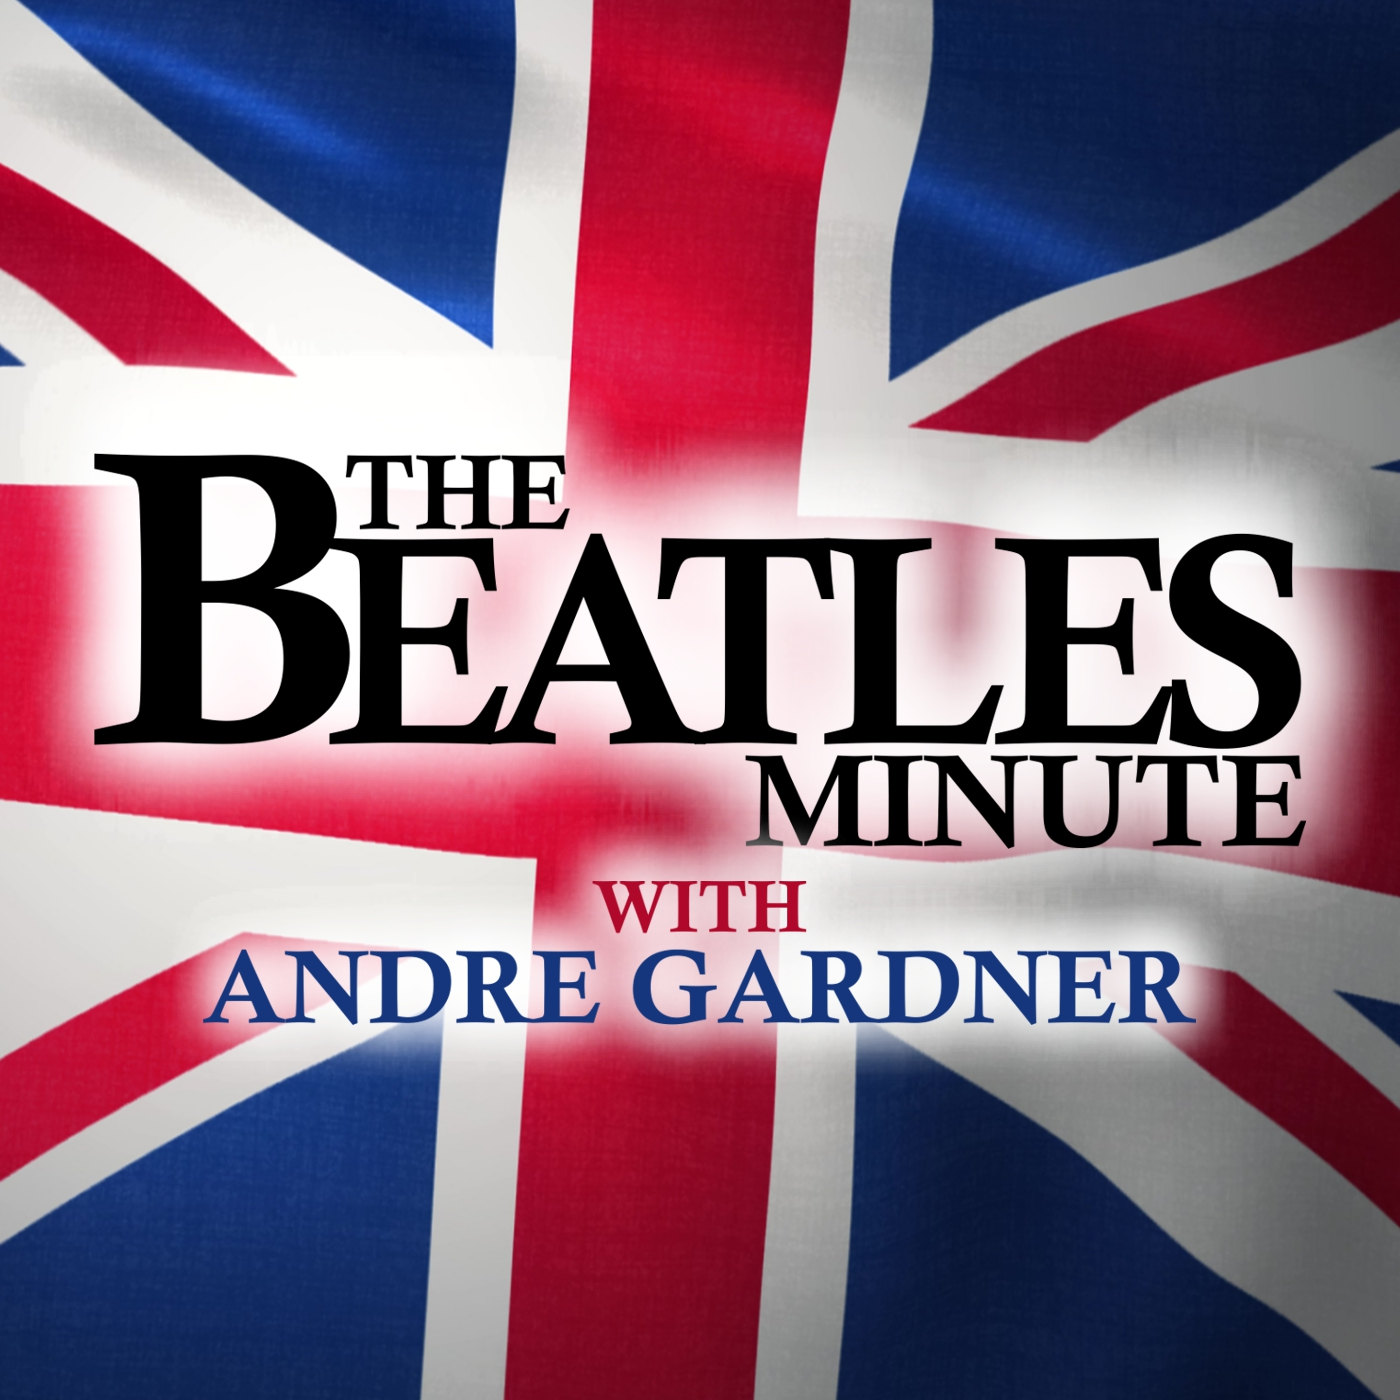 Beatles Minute - week of August 26, 2019